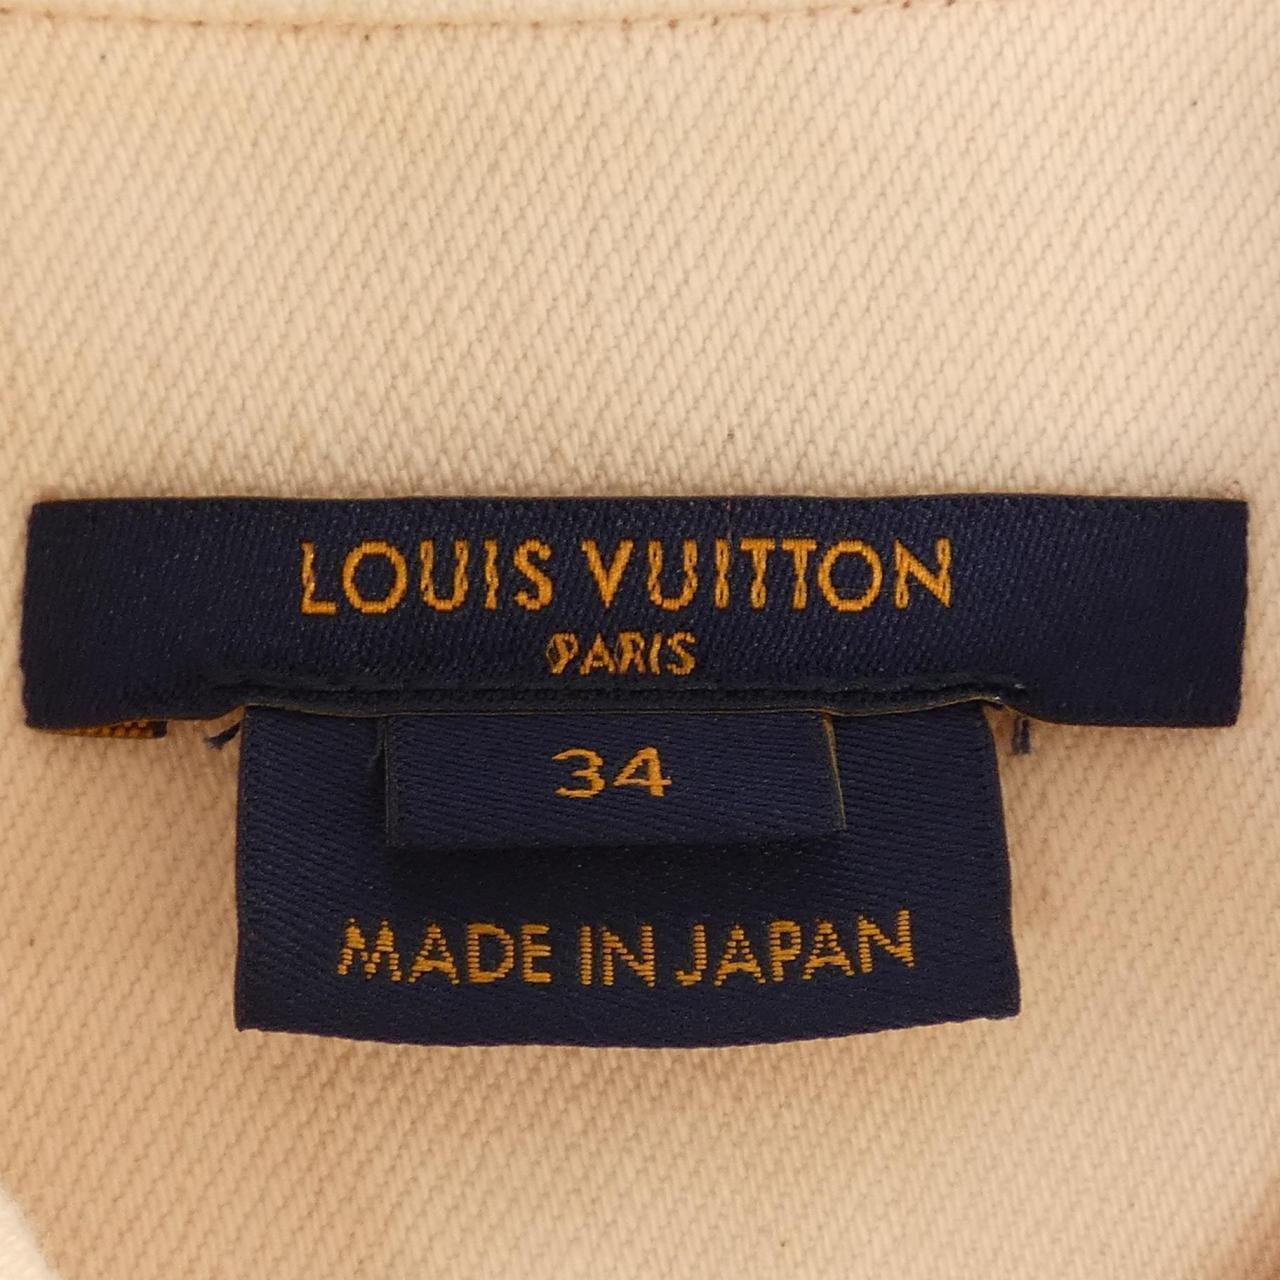 Authentic LOUIS VUITTON Denim Jackets #241-003-124-8742